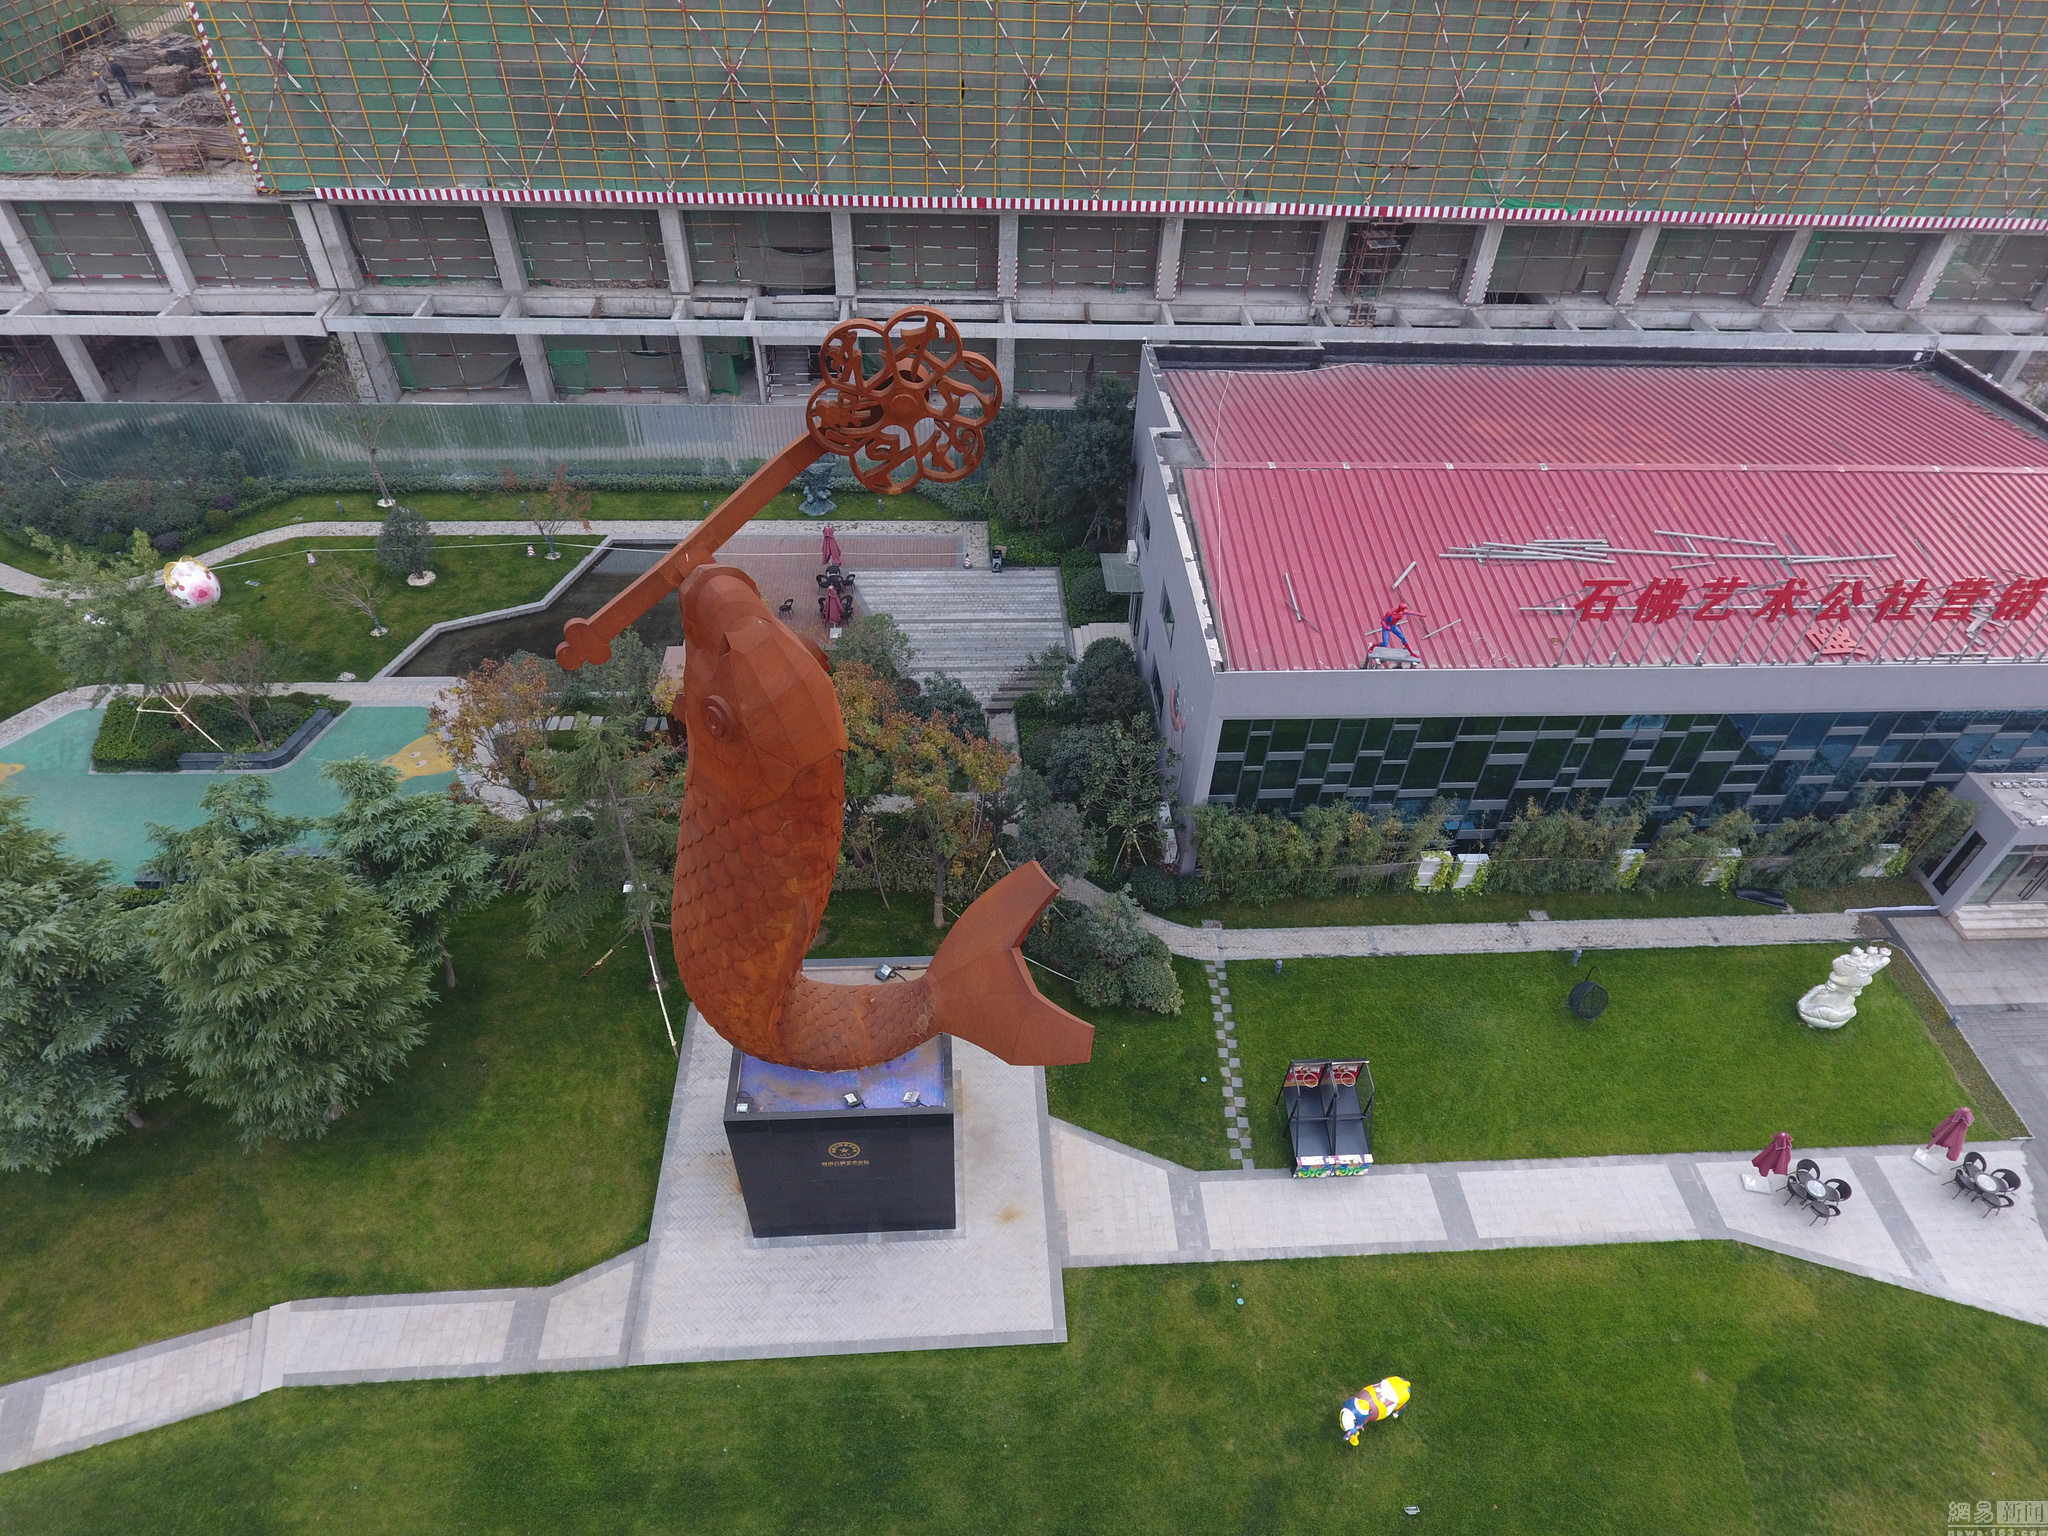 郑州街头现22米鲤鱼雕塑 建造成本超80万元